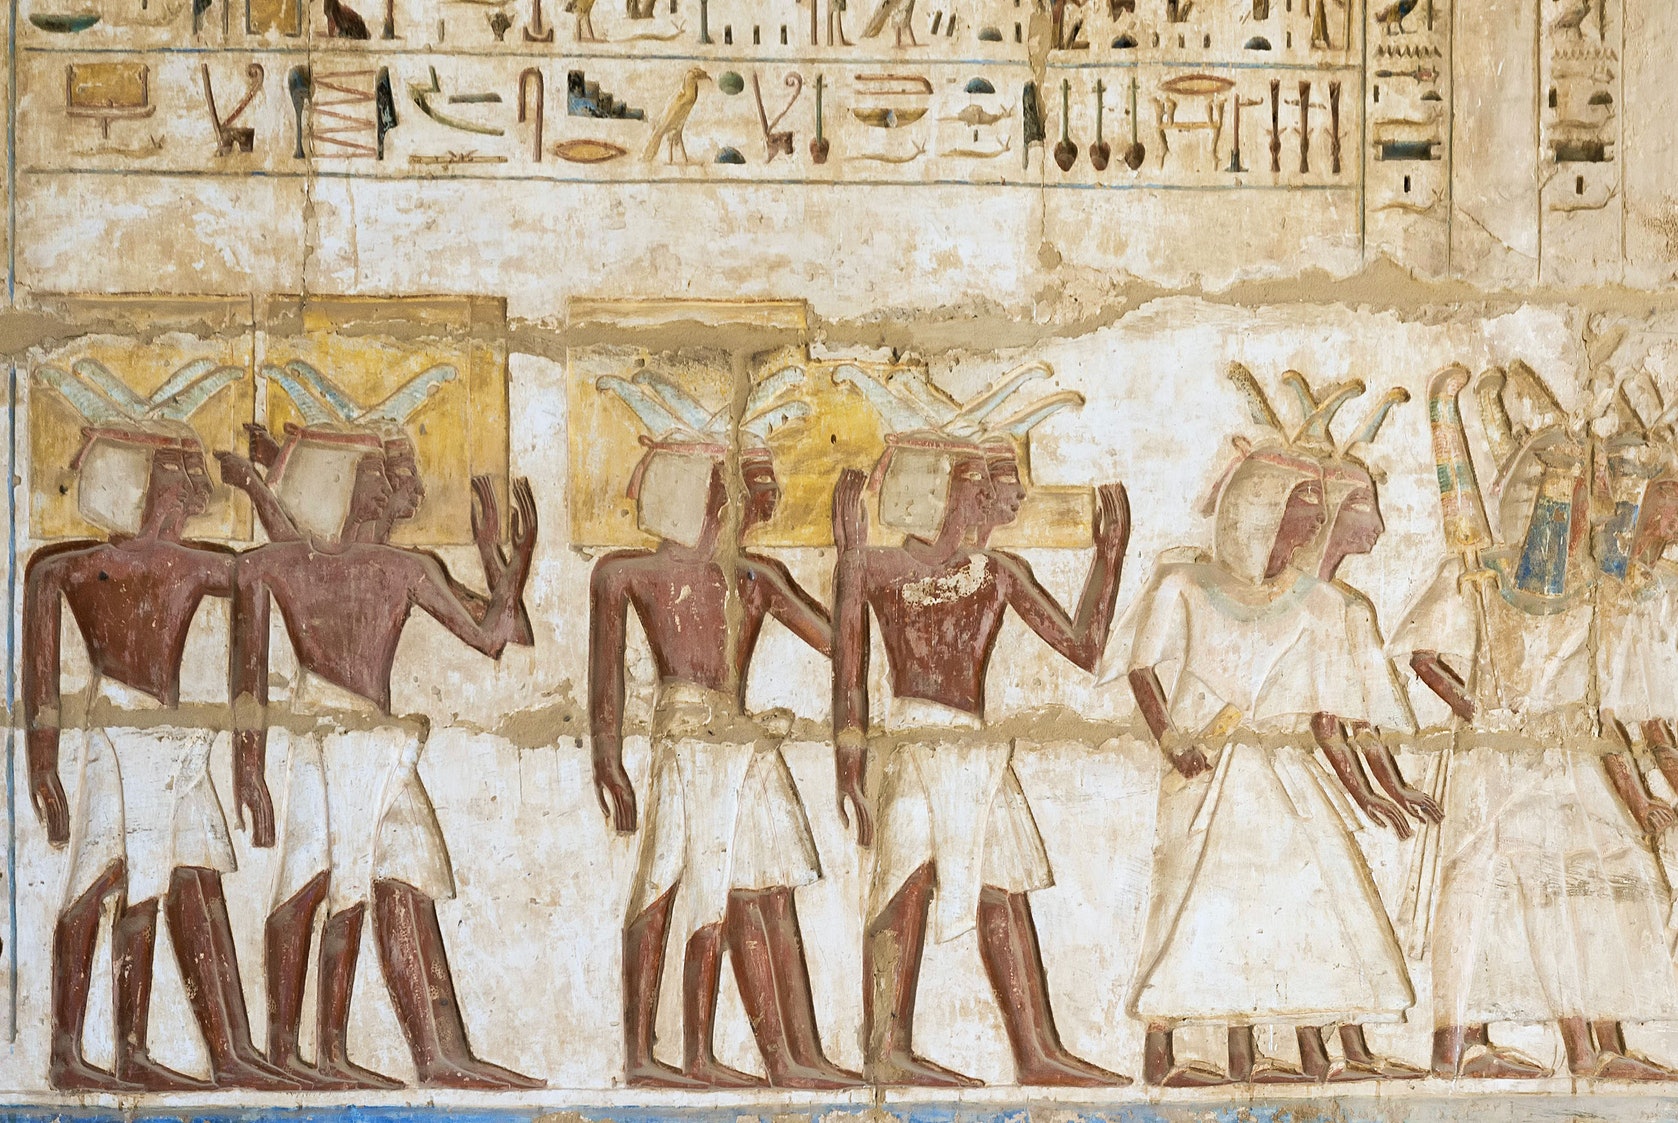 ANTICO EGITTO: Google lancia l’app per la traduzione di antichi geroglifici egiziani